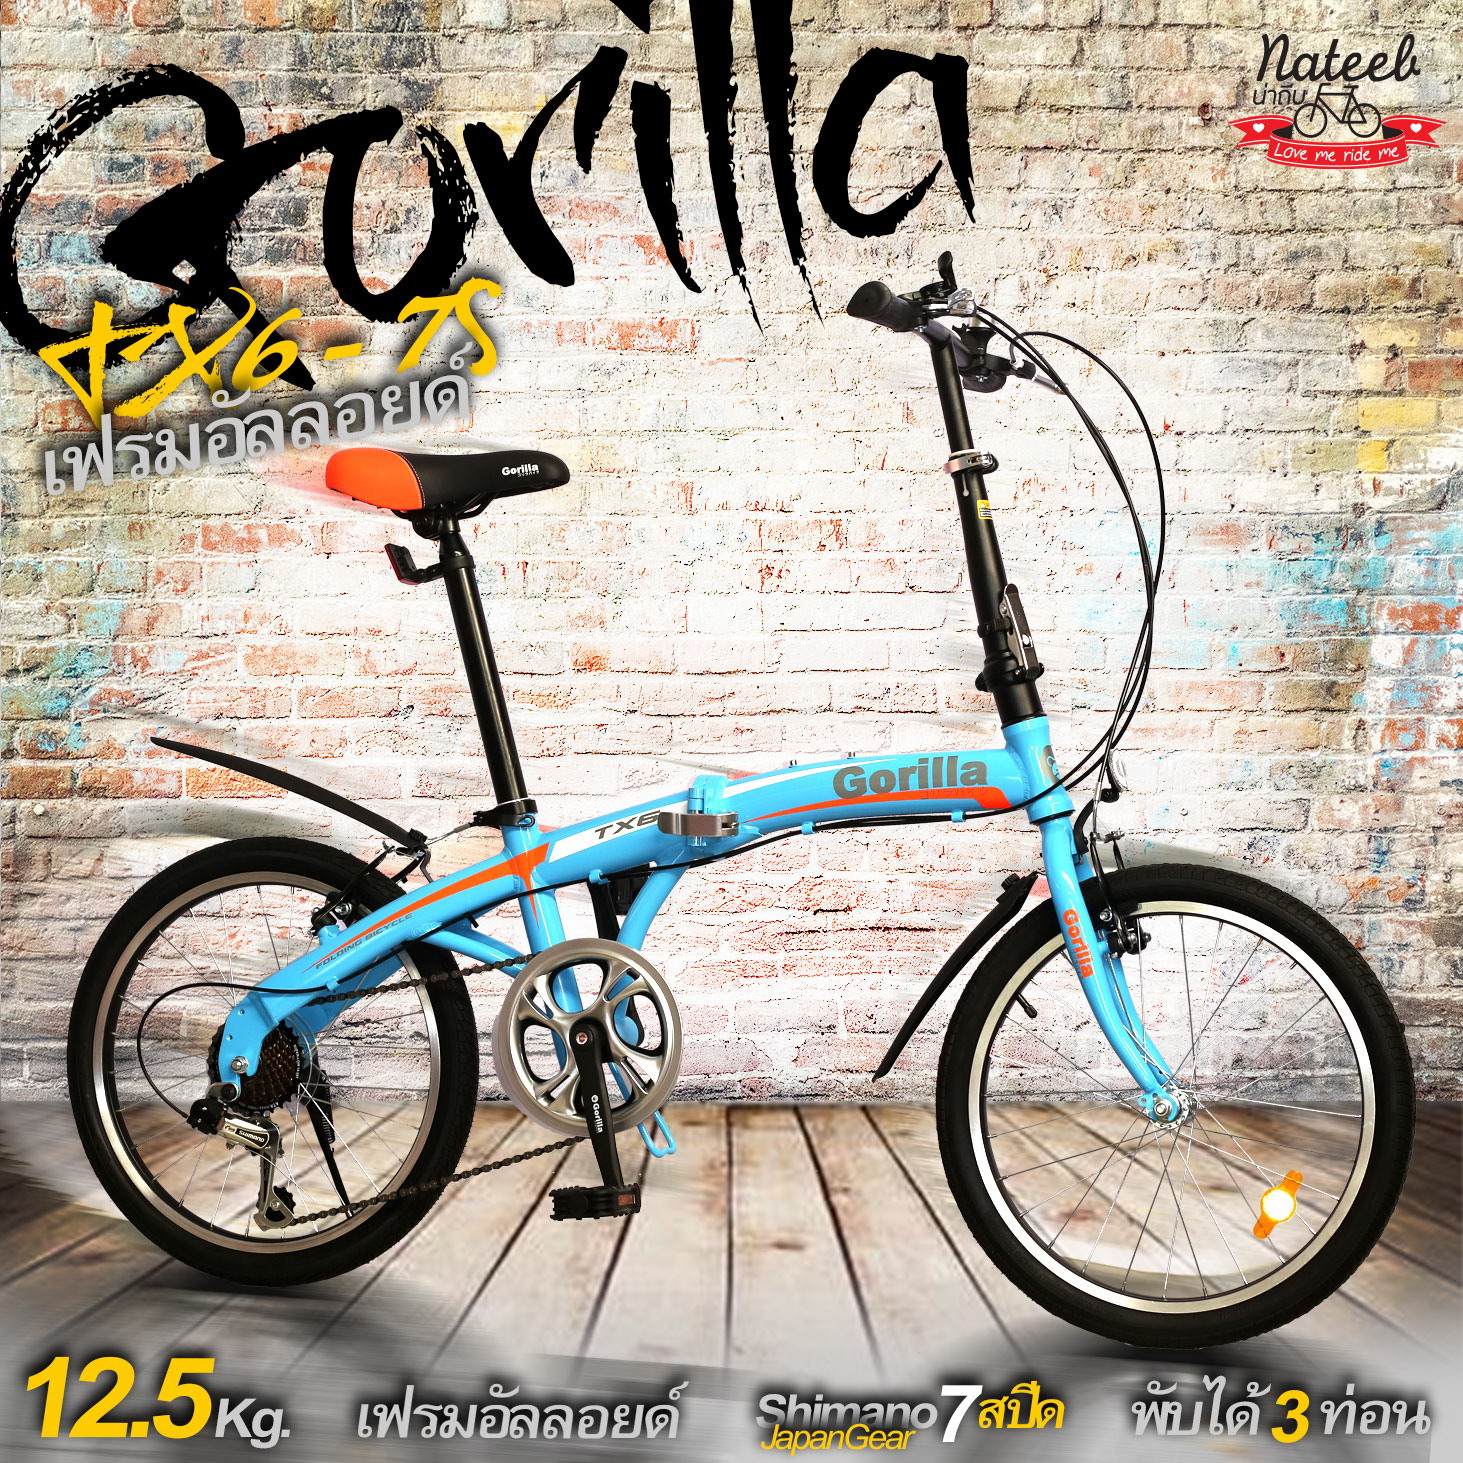 มาใหม่11.11 Gorilla TX6 จักรยานพับได้เฟรมอัลลอยหนัก12.5Kg nateebbike